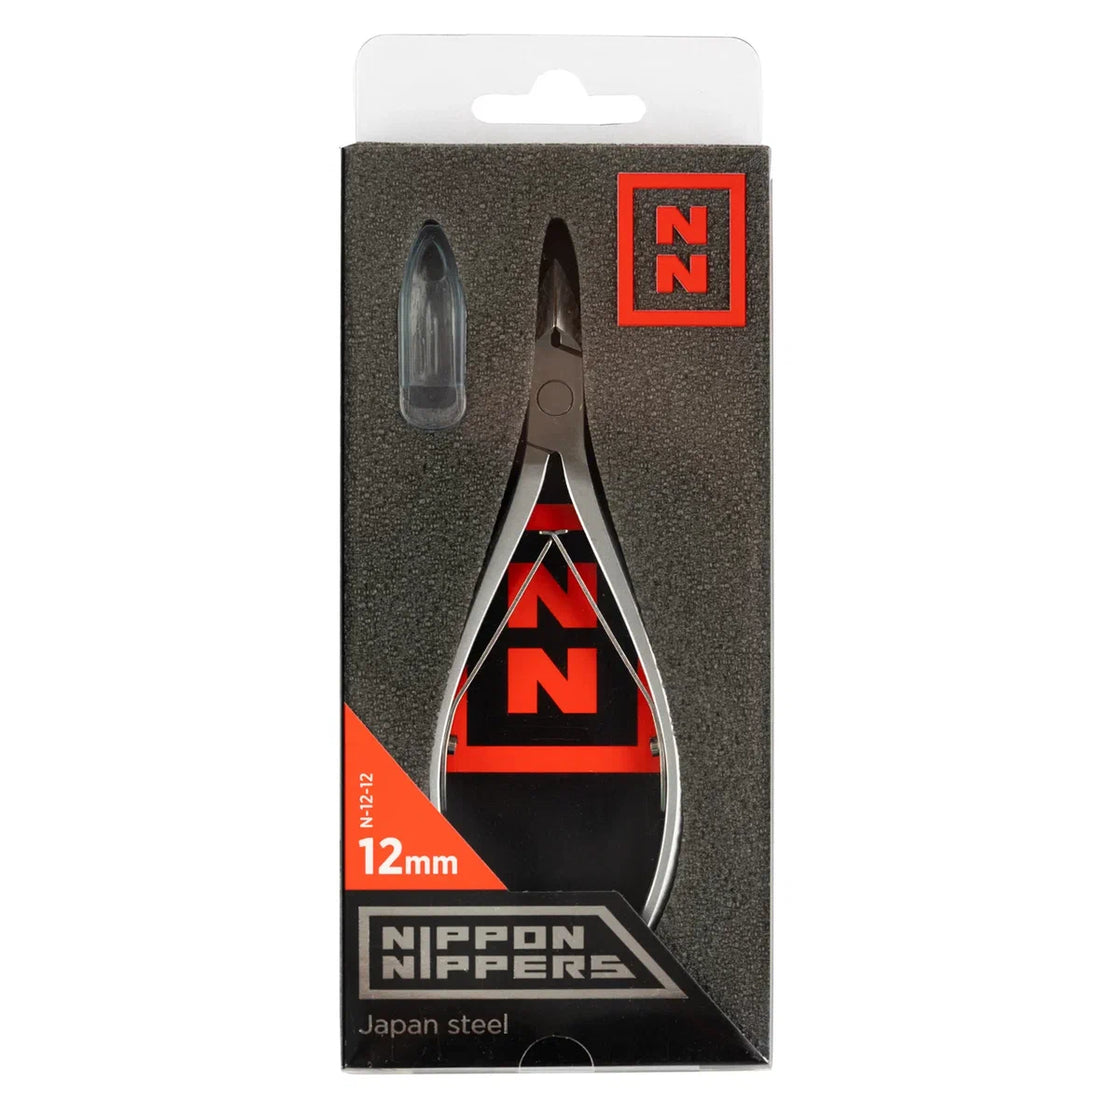 NIPPON NIPPERS Cuticle Nippers N-12-12 (12mm Edge)